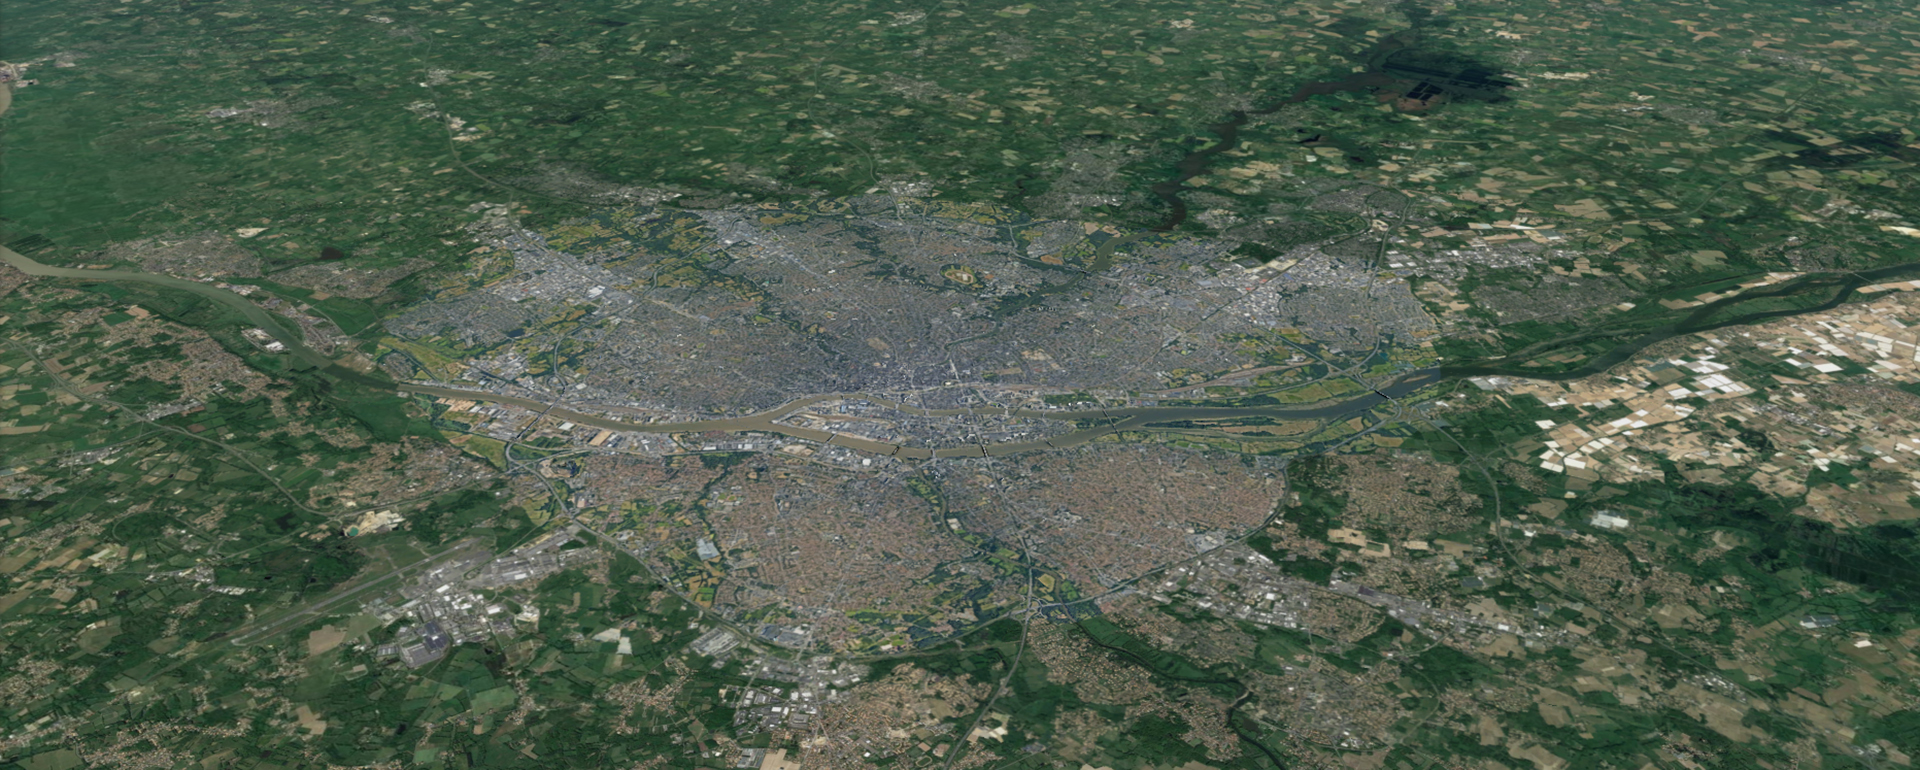 Vue aérienne de l'agglomération nantaise - © Google Earth